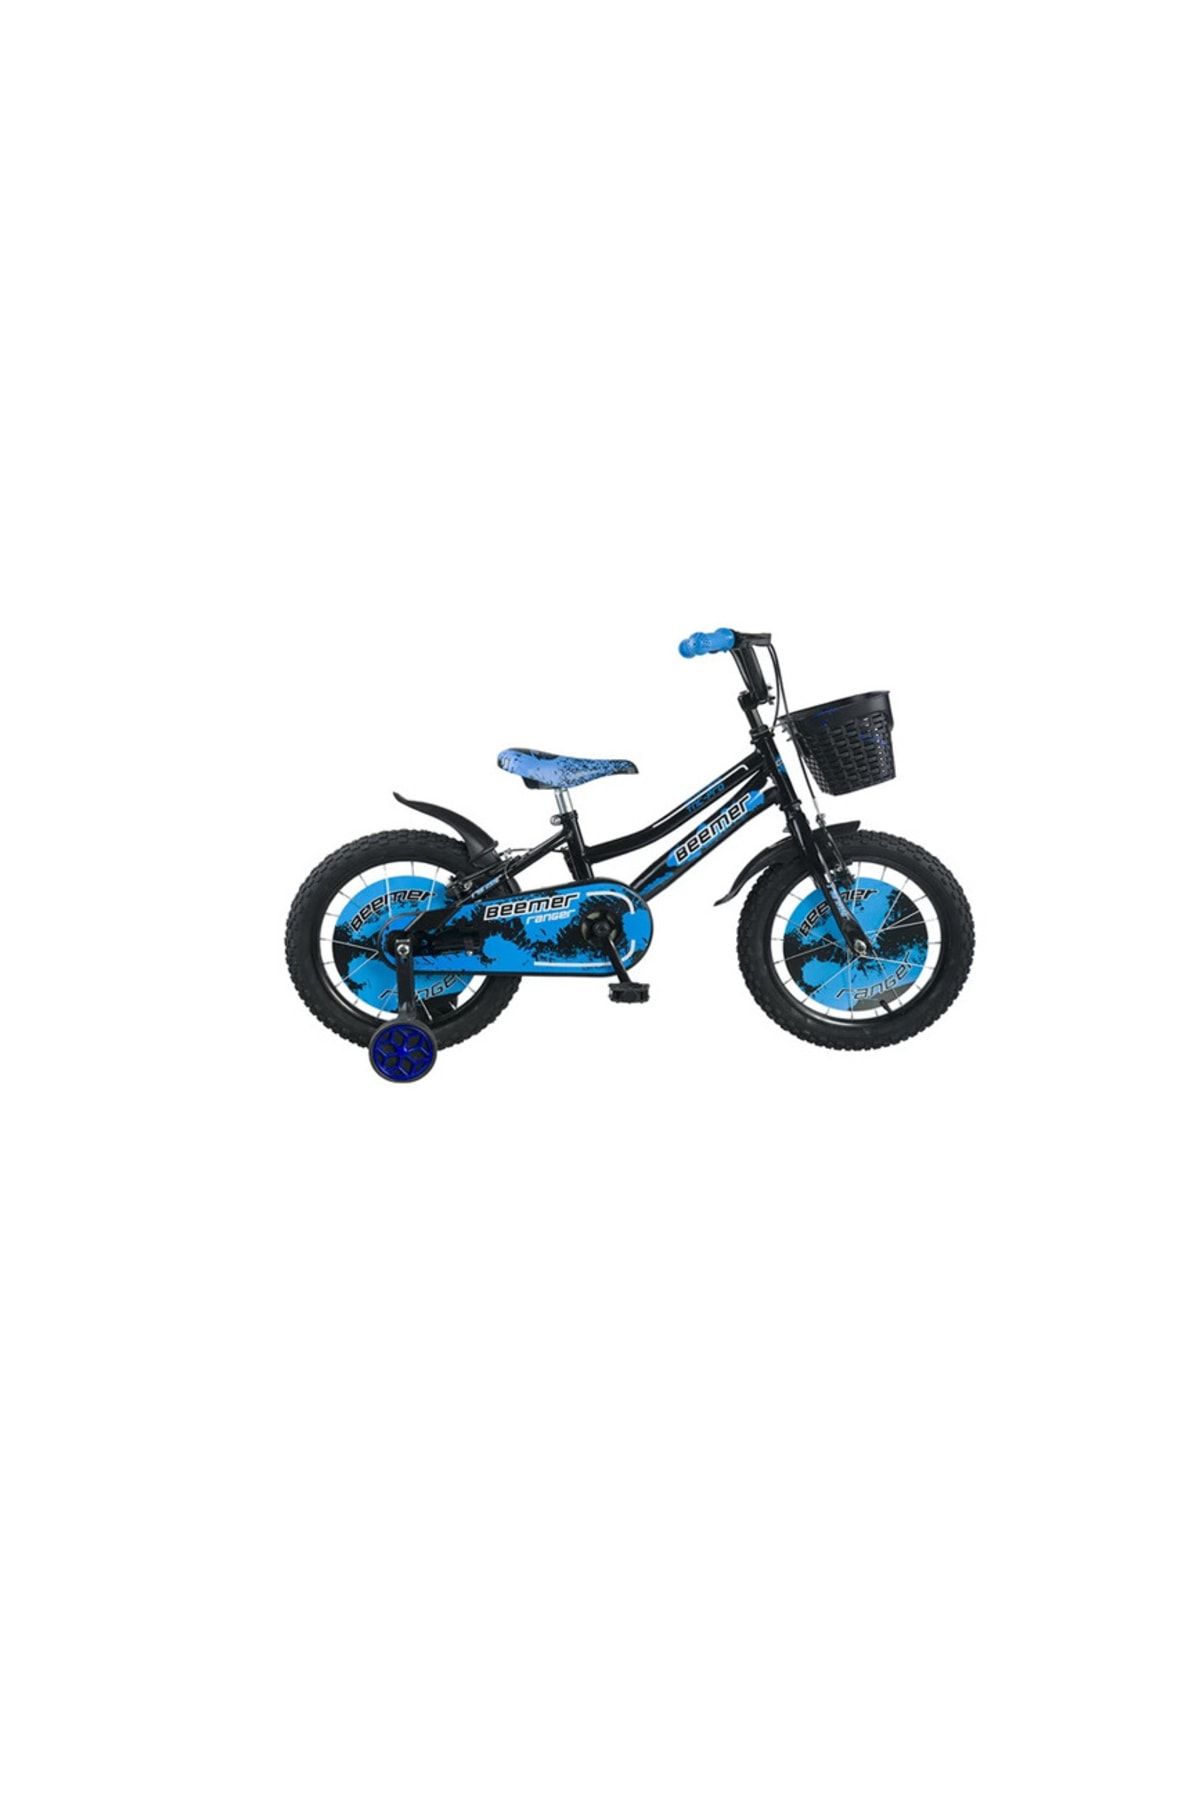 Tunca Çocuk Bisikleti Mavi 4 Tekerlekli 16 Jant Çocuk Bisikleti Bisiklet